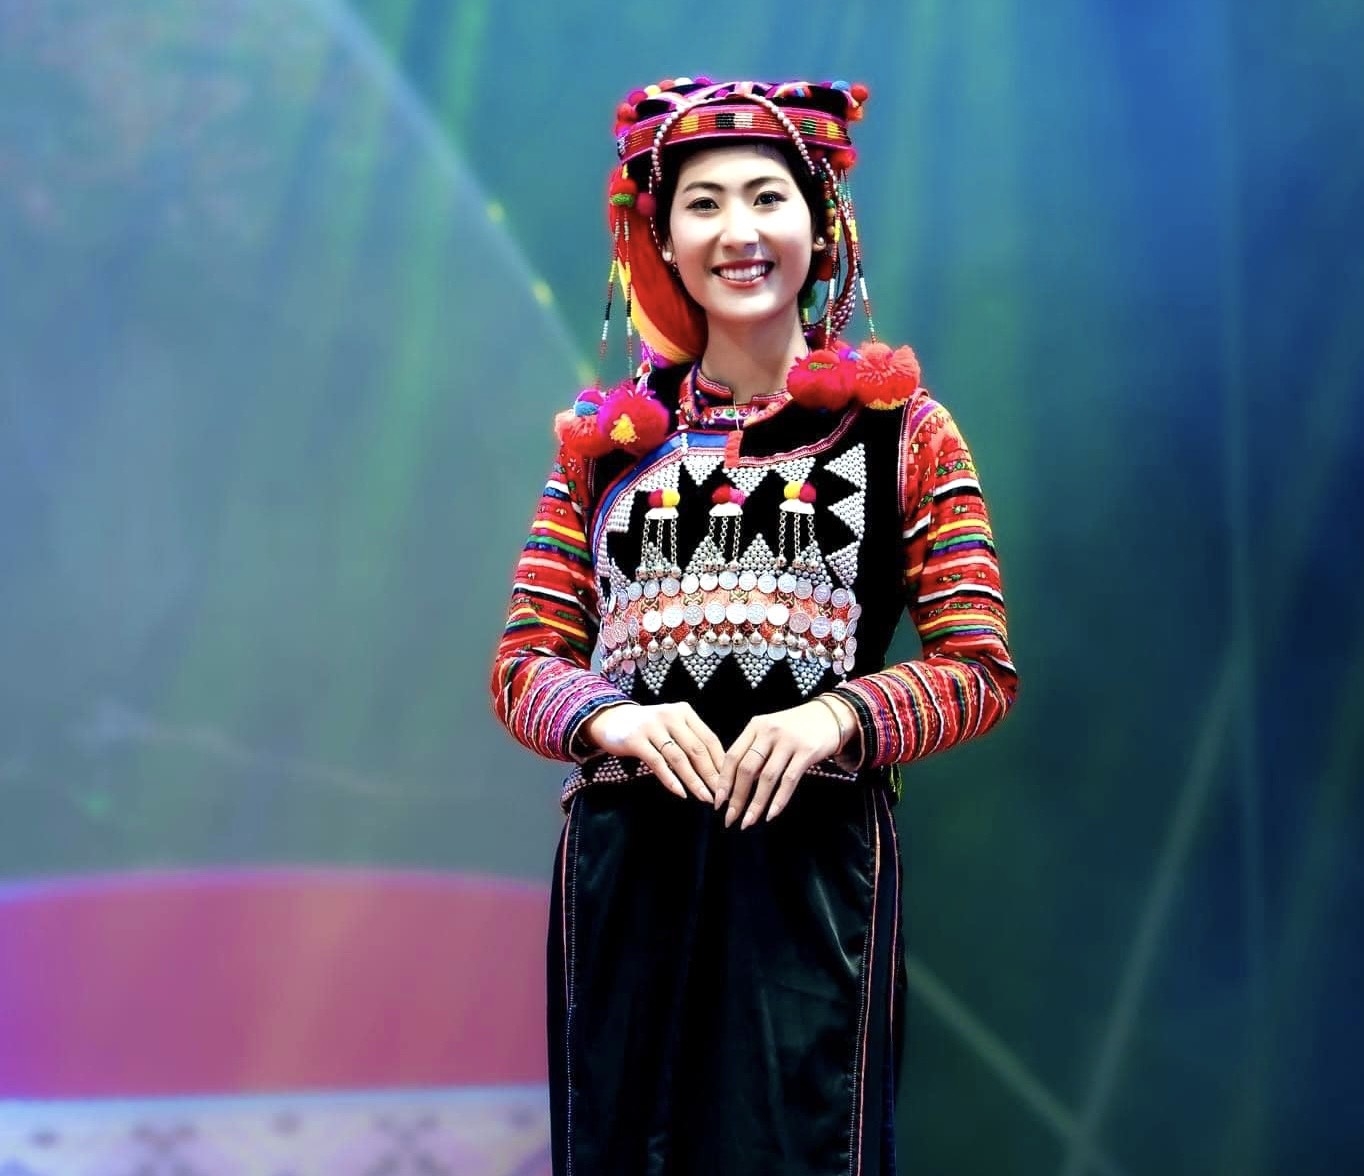 Thiếu nữ Hà Nhì đoàn huyện Mường Nhé trong trang phục truyền thống của dân tộc. (Ảnh Nguyễn Hiền)